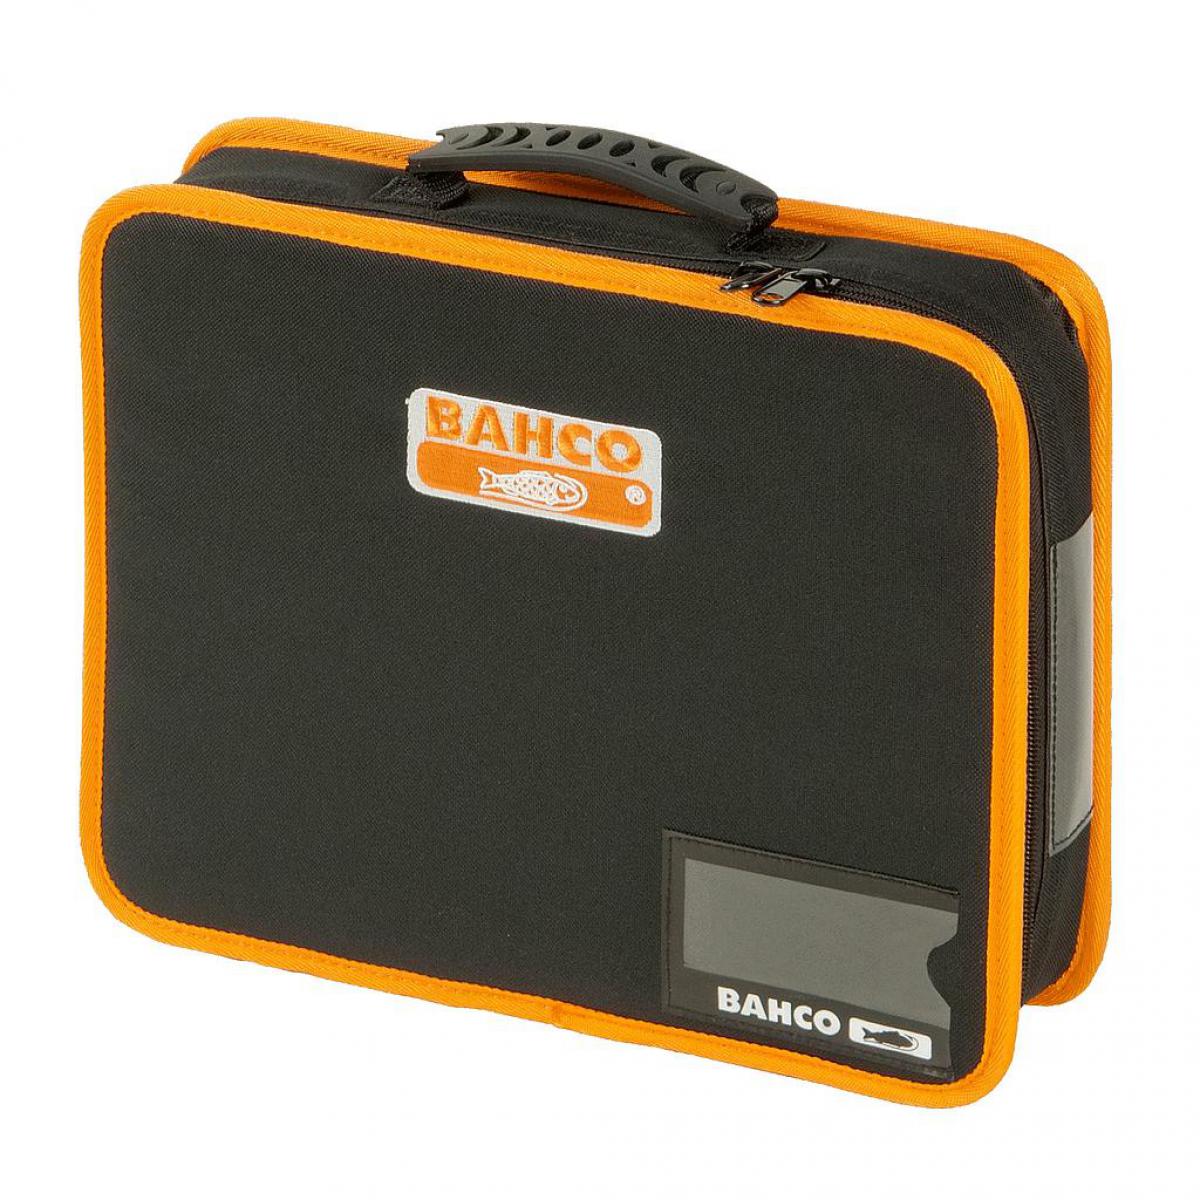 Bahco - Bahco - Pochette porte-outils en tissu moyenne 6 L, avec poignée caoutchouc, 62 x 275 x 330 mm - 4750FB5B - Boîtes à outils